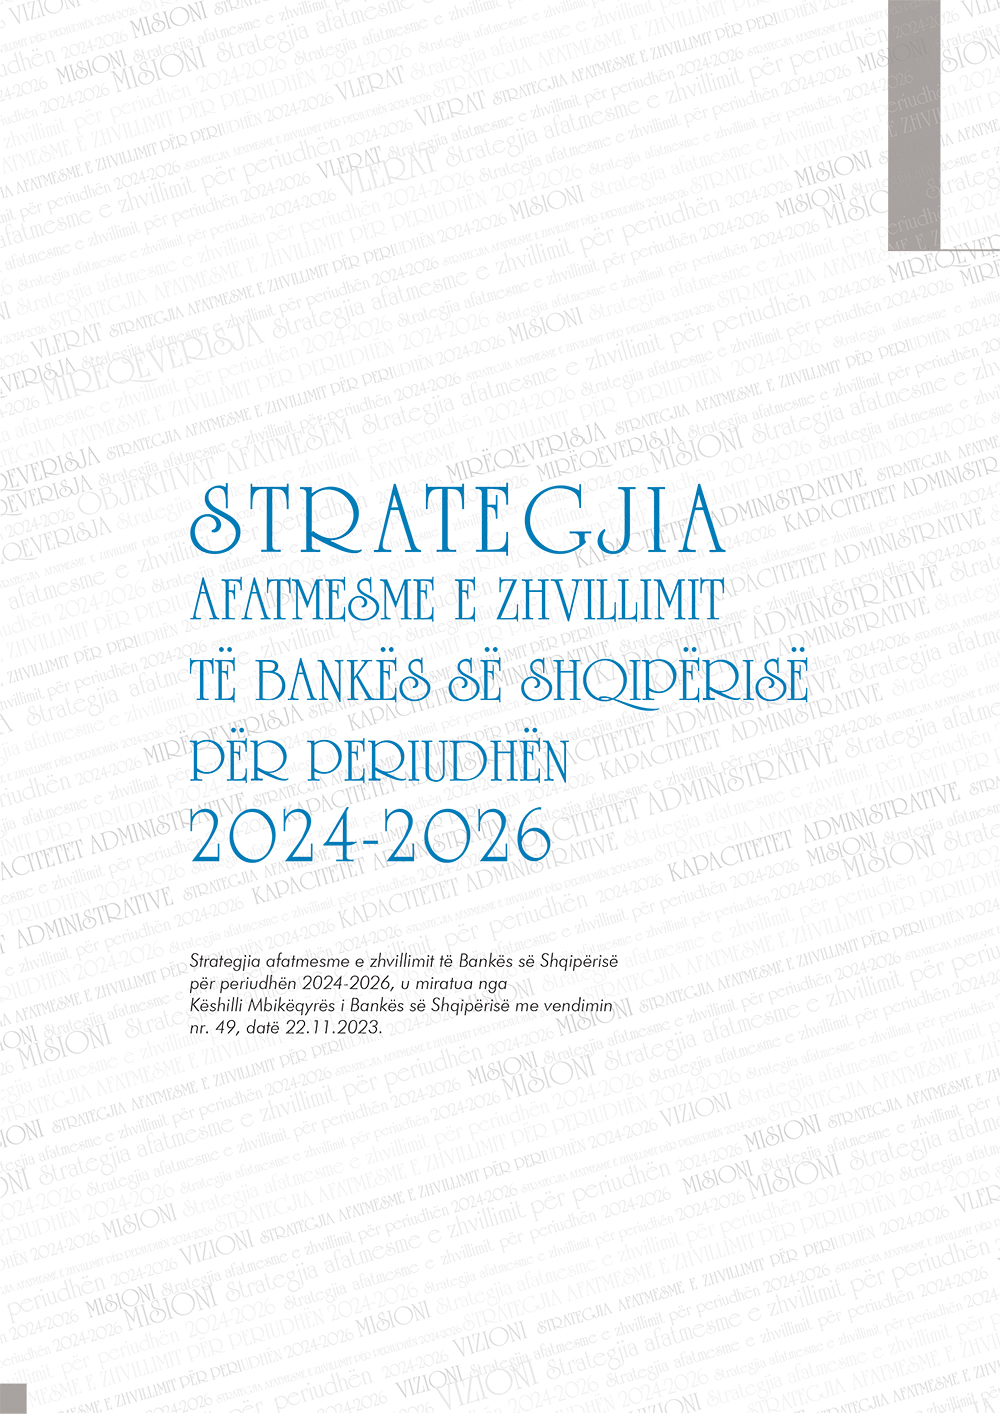 Strategjia afatmesme e zhvillimit të Bankës së Shqipërisë 2024-2026